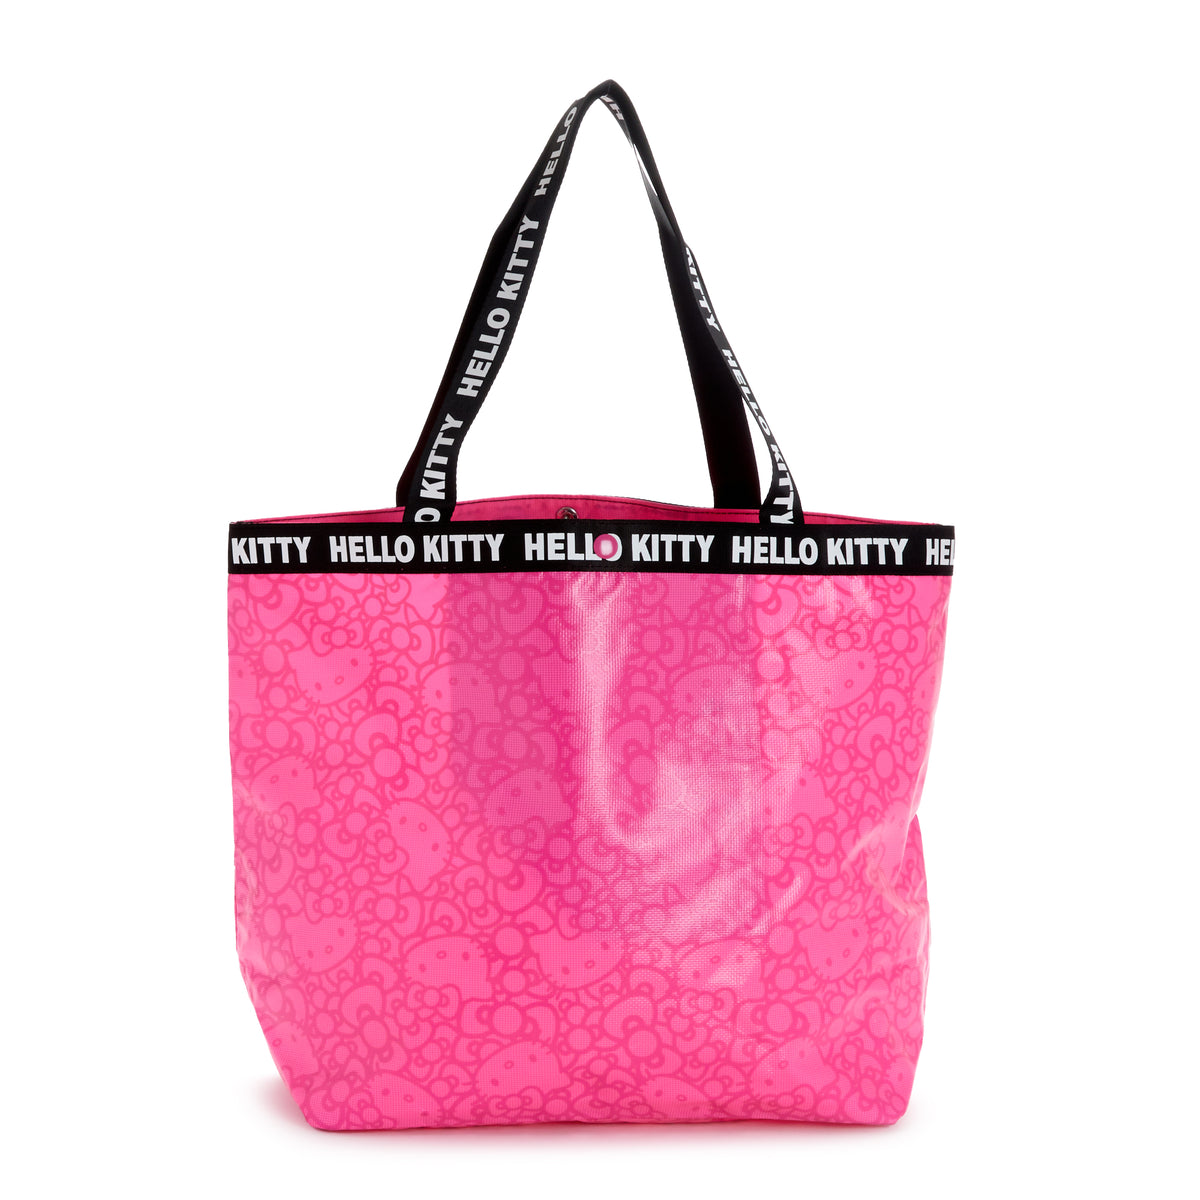 Hello kitty purse | Hello kitty purse, Hello kitty bag, Pink hello kitty